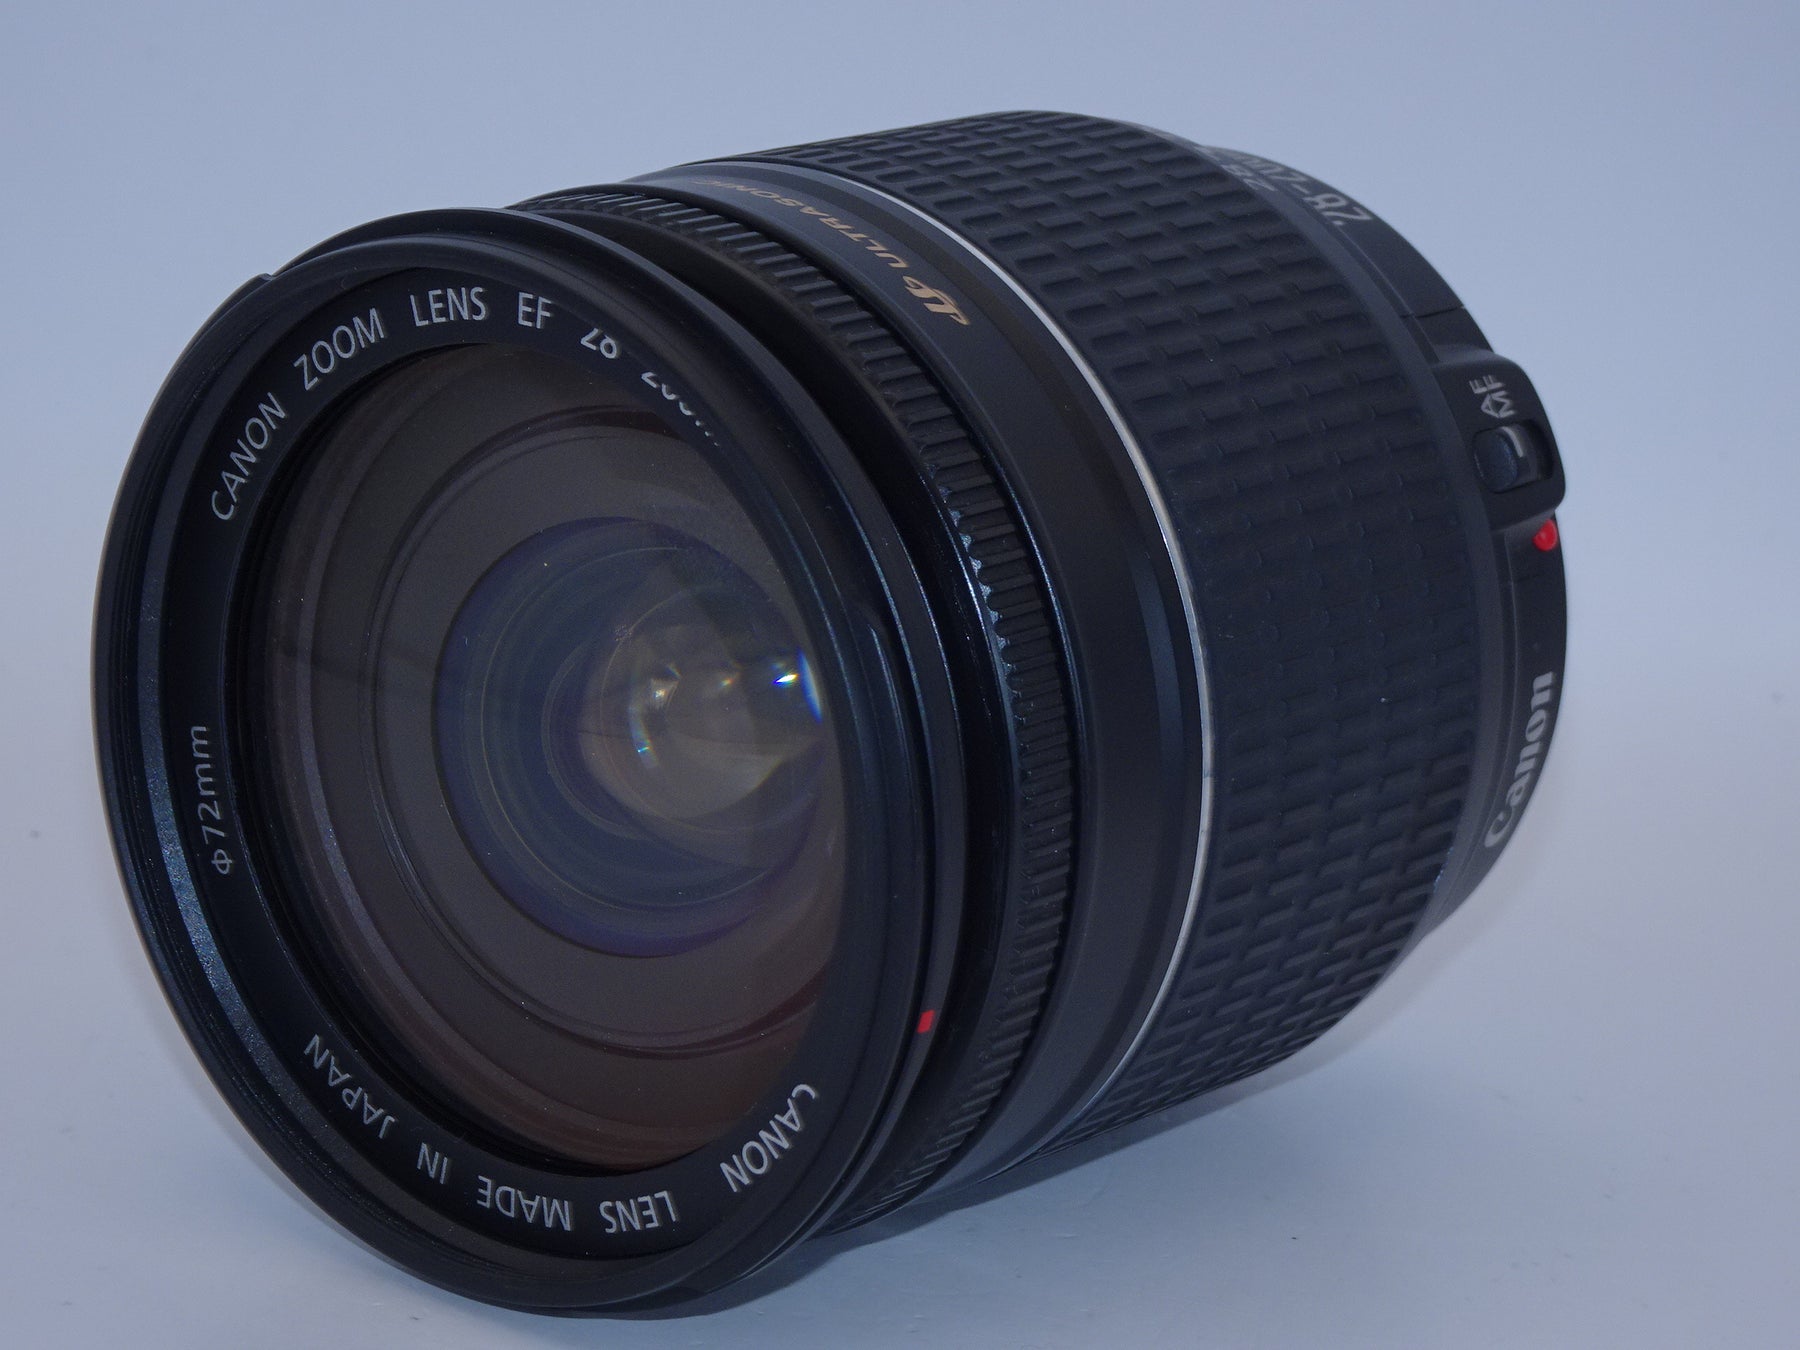 【外観特上級】Canon EF レンズ 28-200mm F3.5-5.6 USM